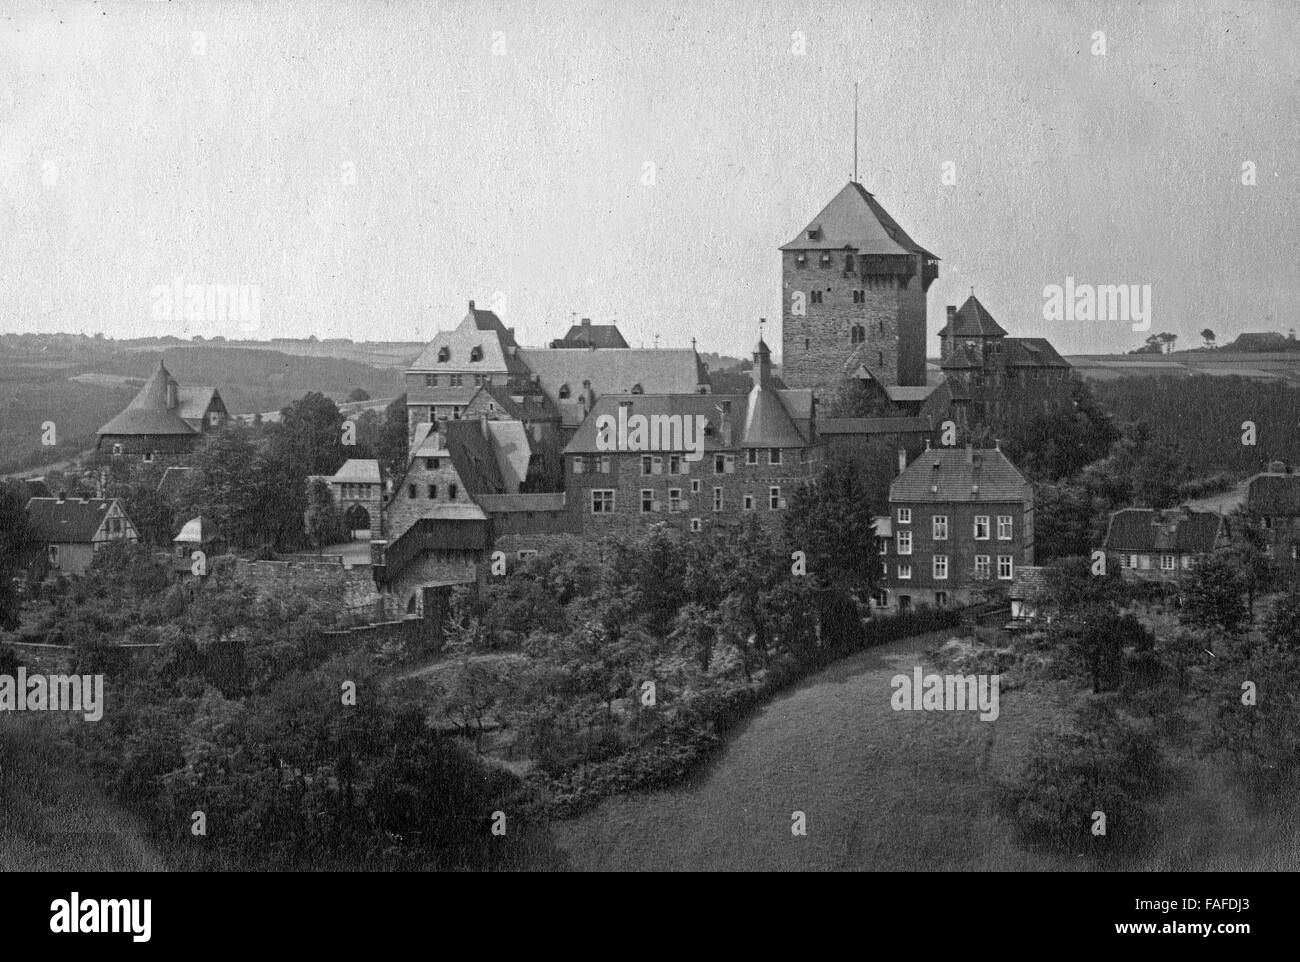 Blick auf Schloss Burg bei Solingen, Deutschland 1920er Jahre. View to Schloss Burg castle near Solingen, Germany 1920s. Stock Photo